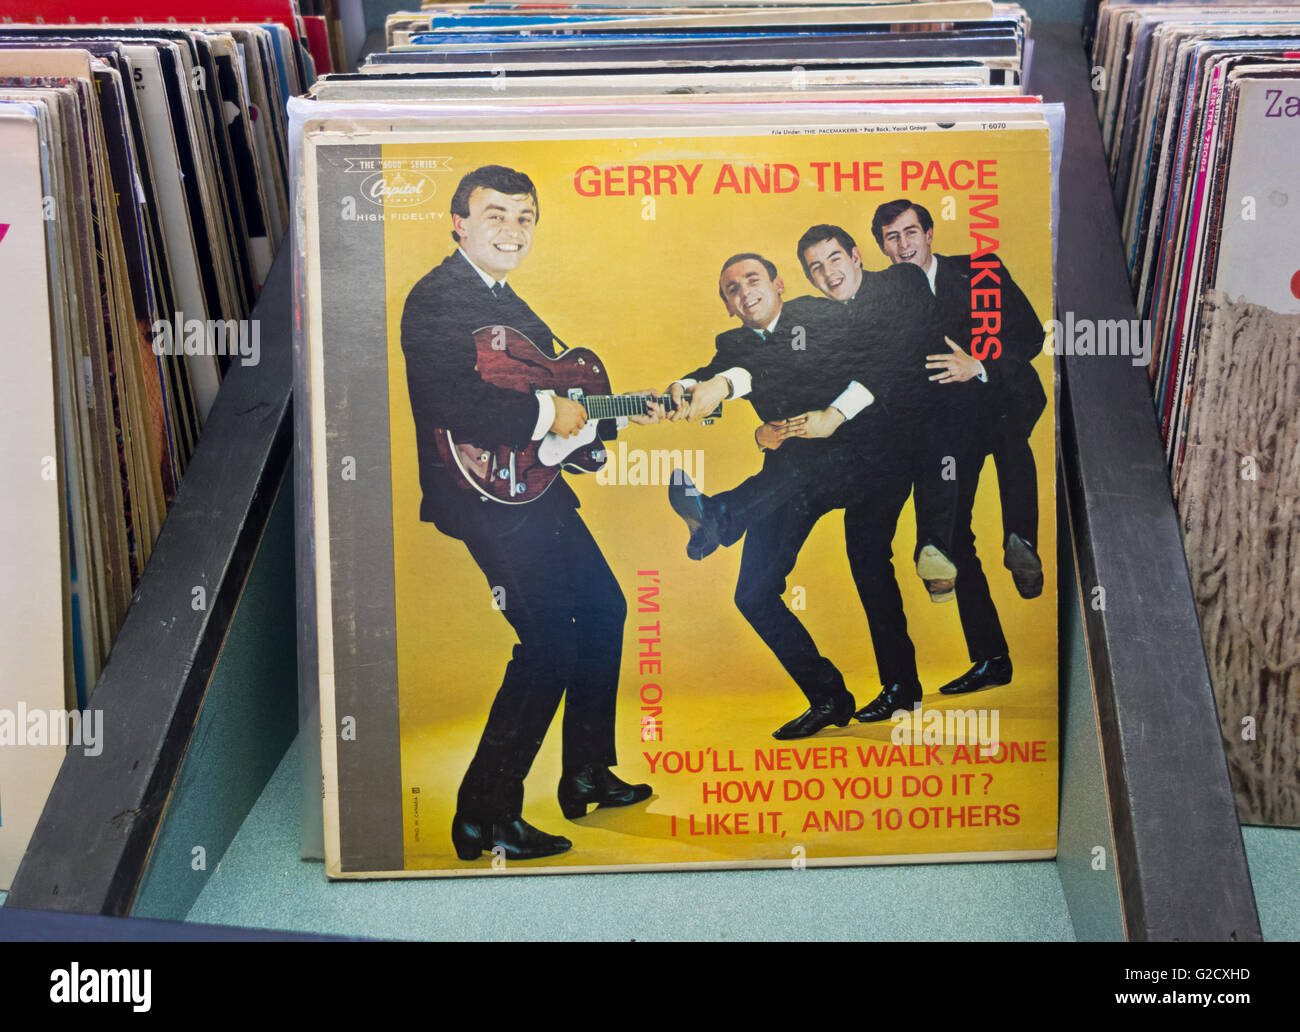 Stapel von Vinylplatten, darunter Gerry und das Pacemakers-Album: 'How do you like it'. Stockfoto